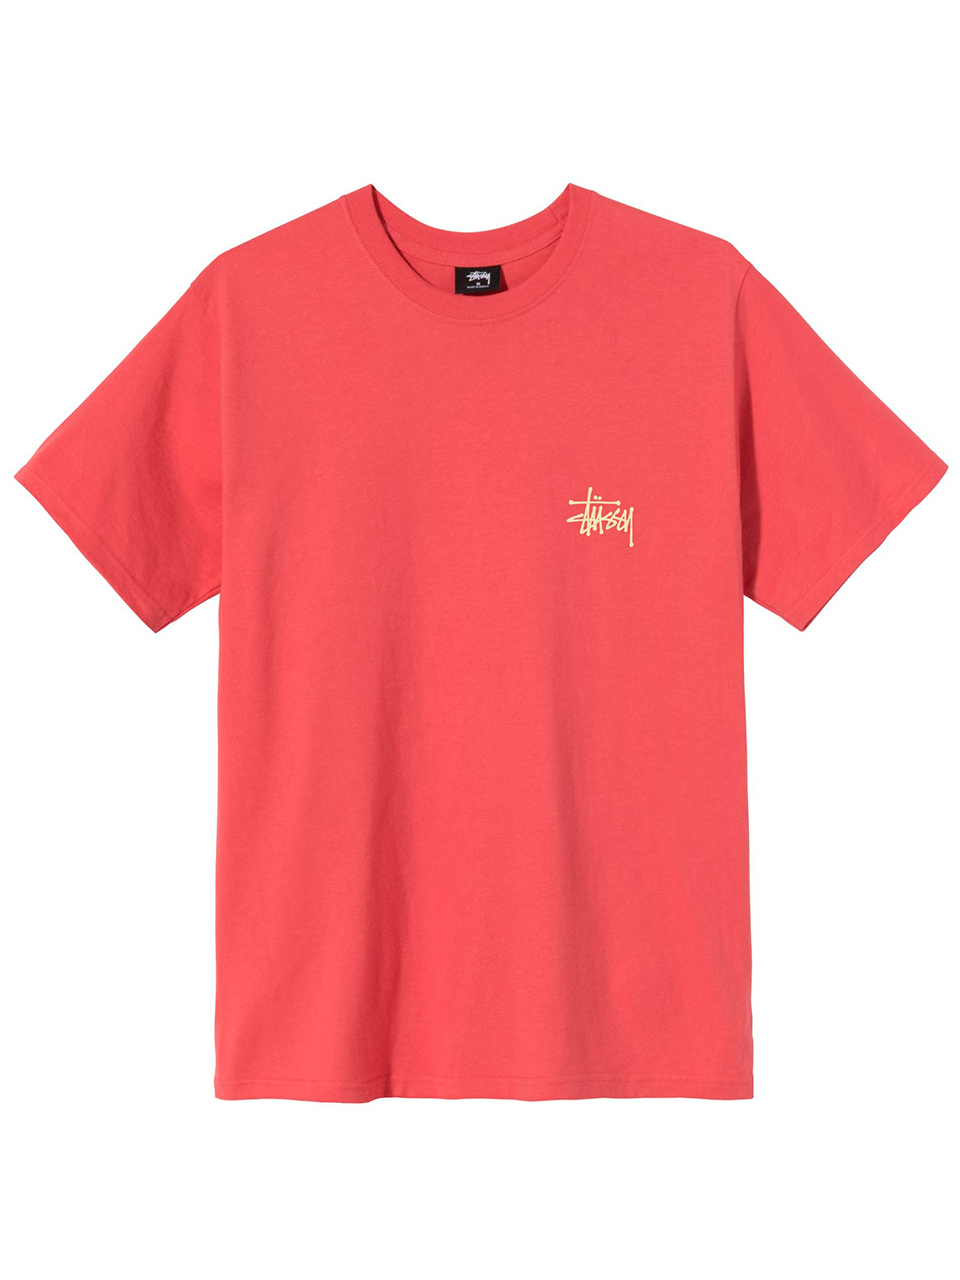 Imagem de: Camiseta Stussy Vermelha Básica